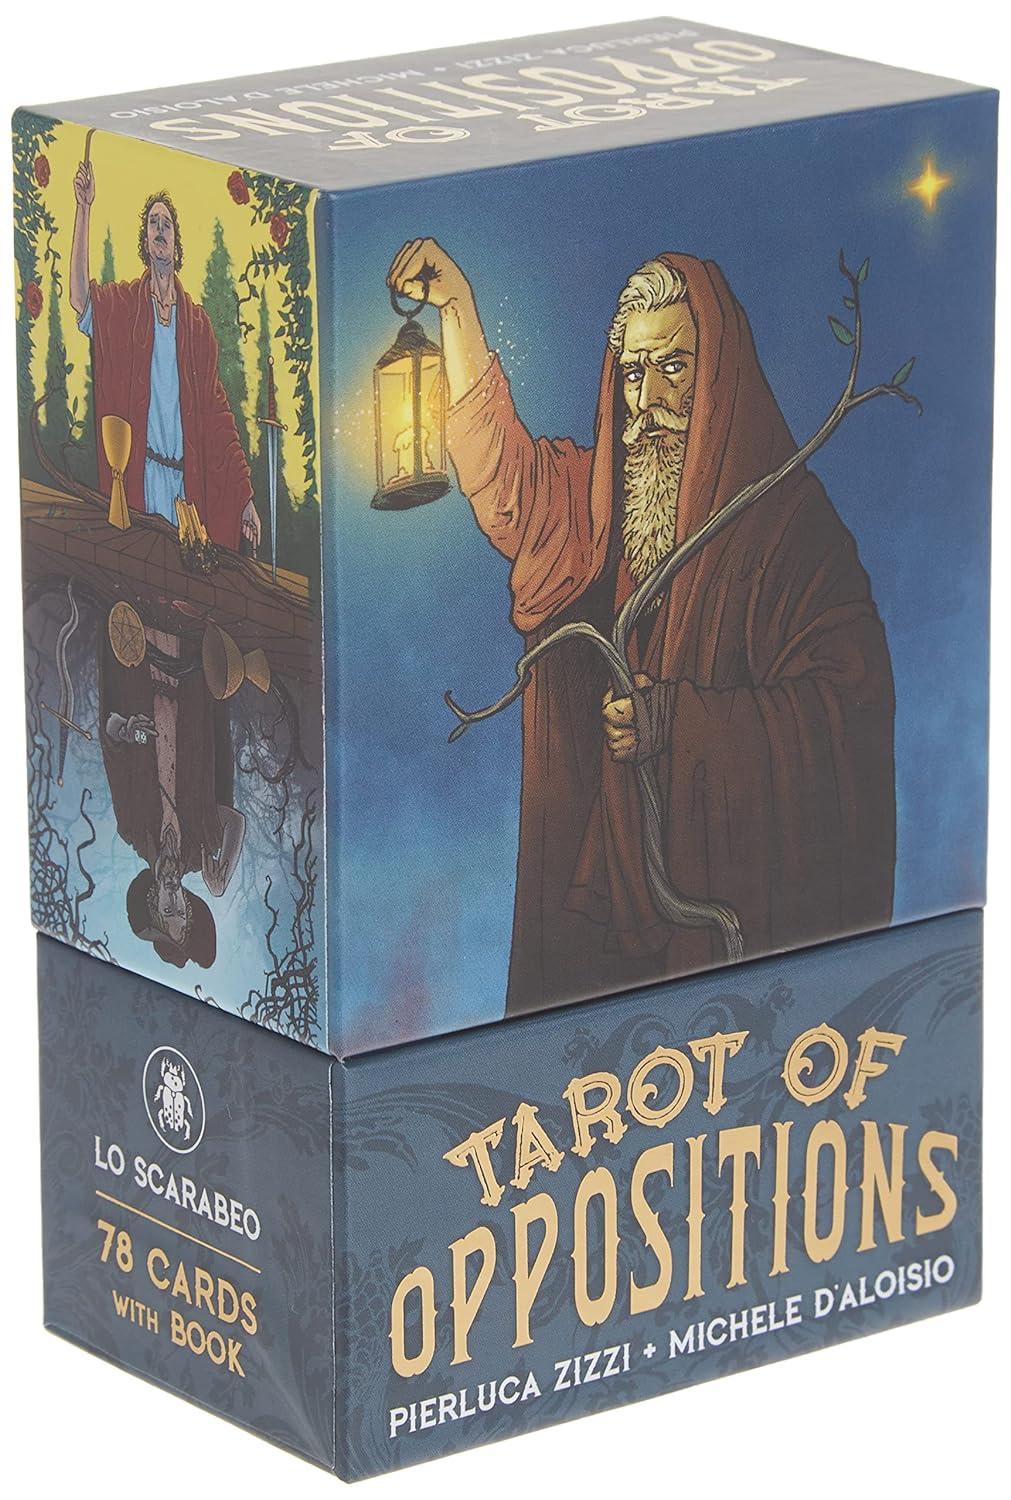 Tarot Of Oppositions